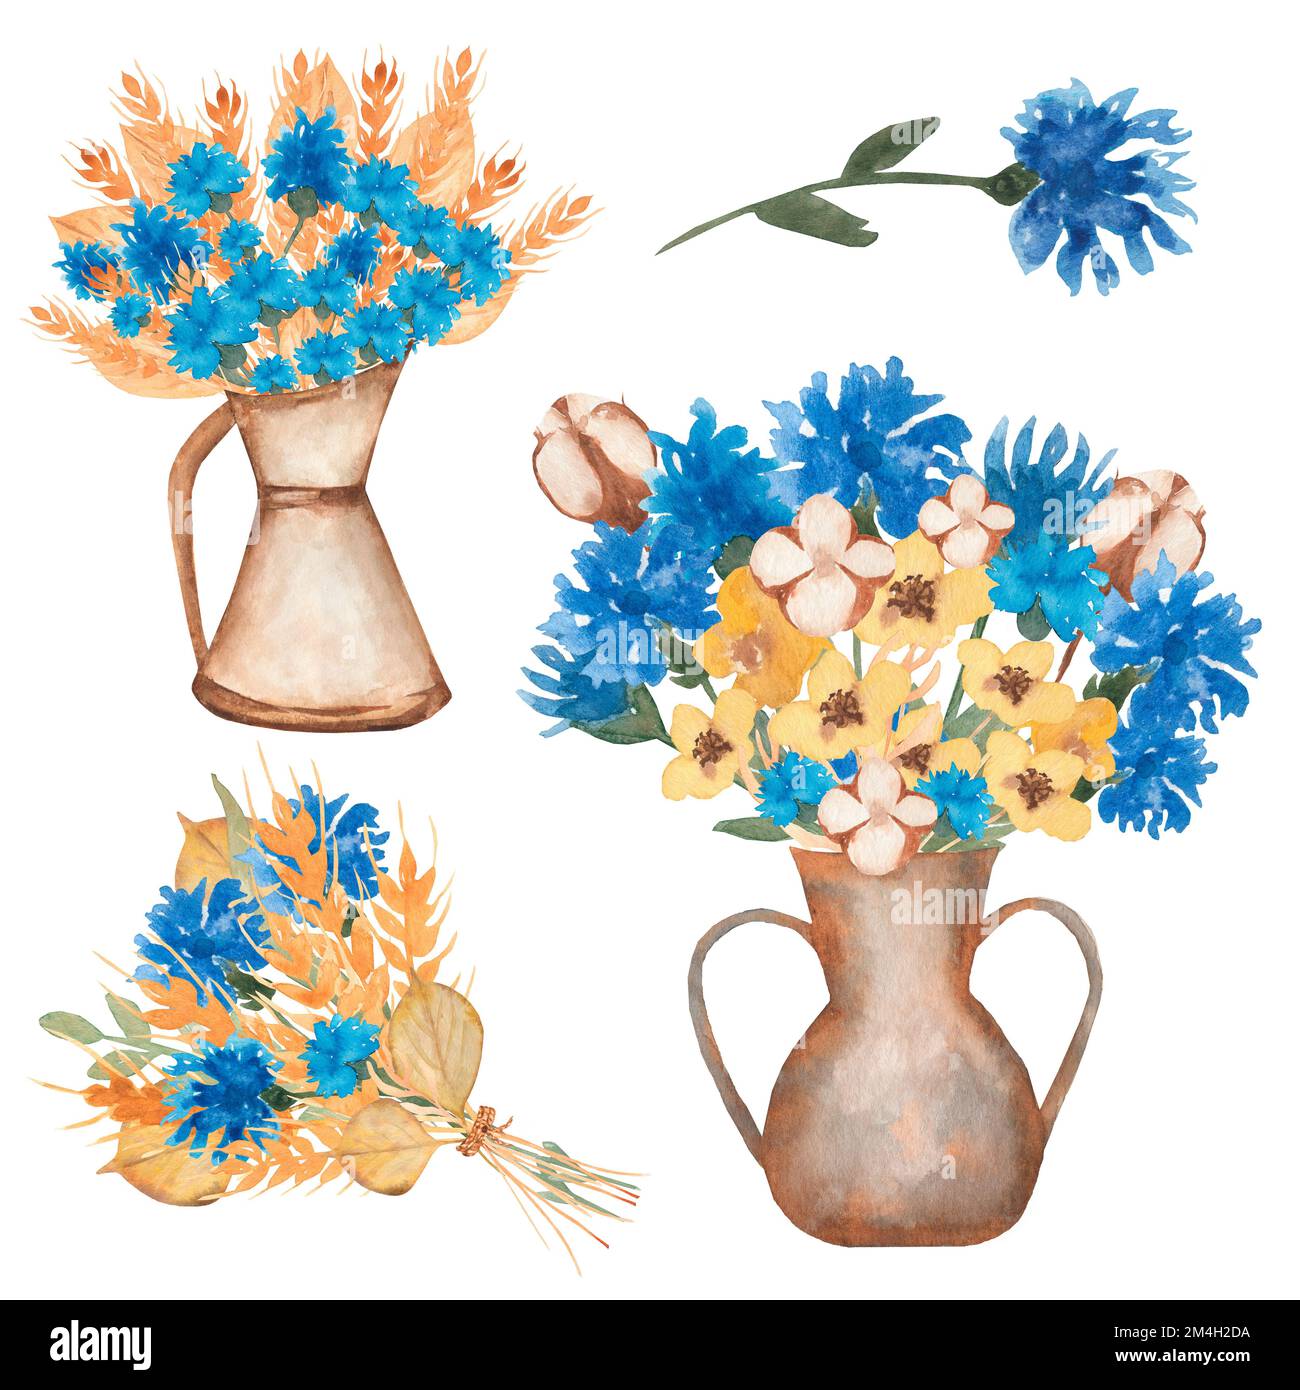 Disegno a mano acquerello giallo spighe di grano e fiori blu bouquet illustrazione. Splendidi fiori di prato in un vaso, stile retrò. Foto Stock